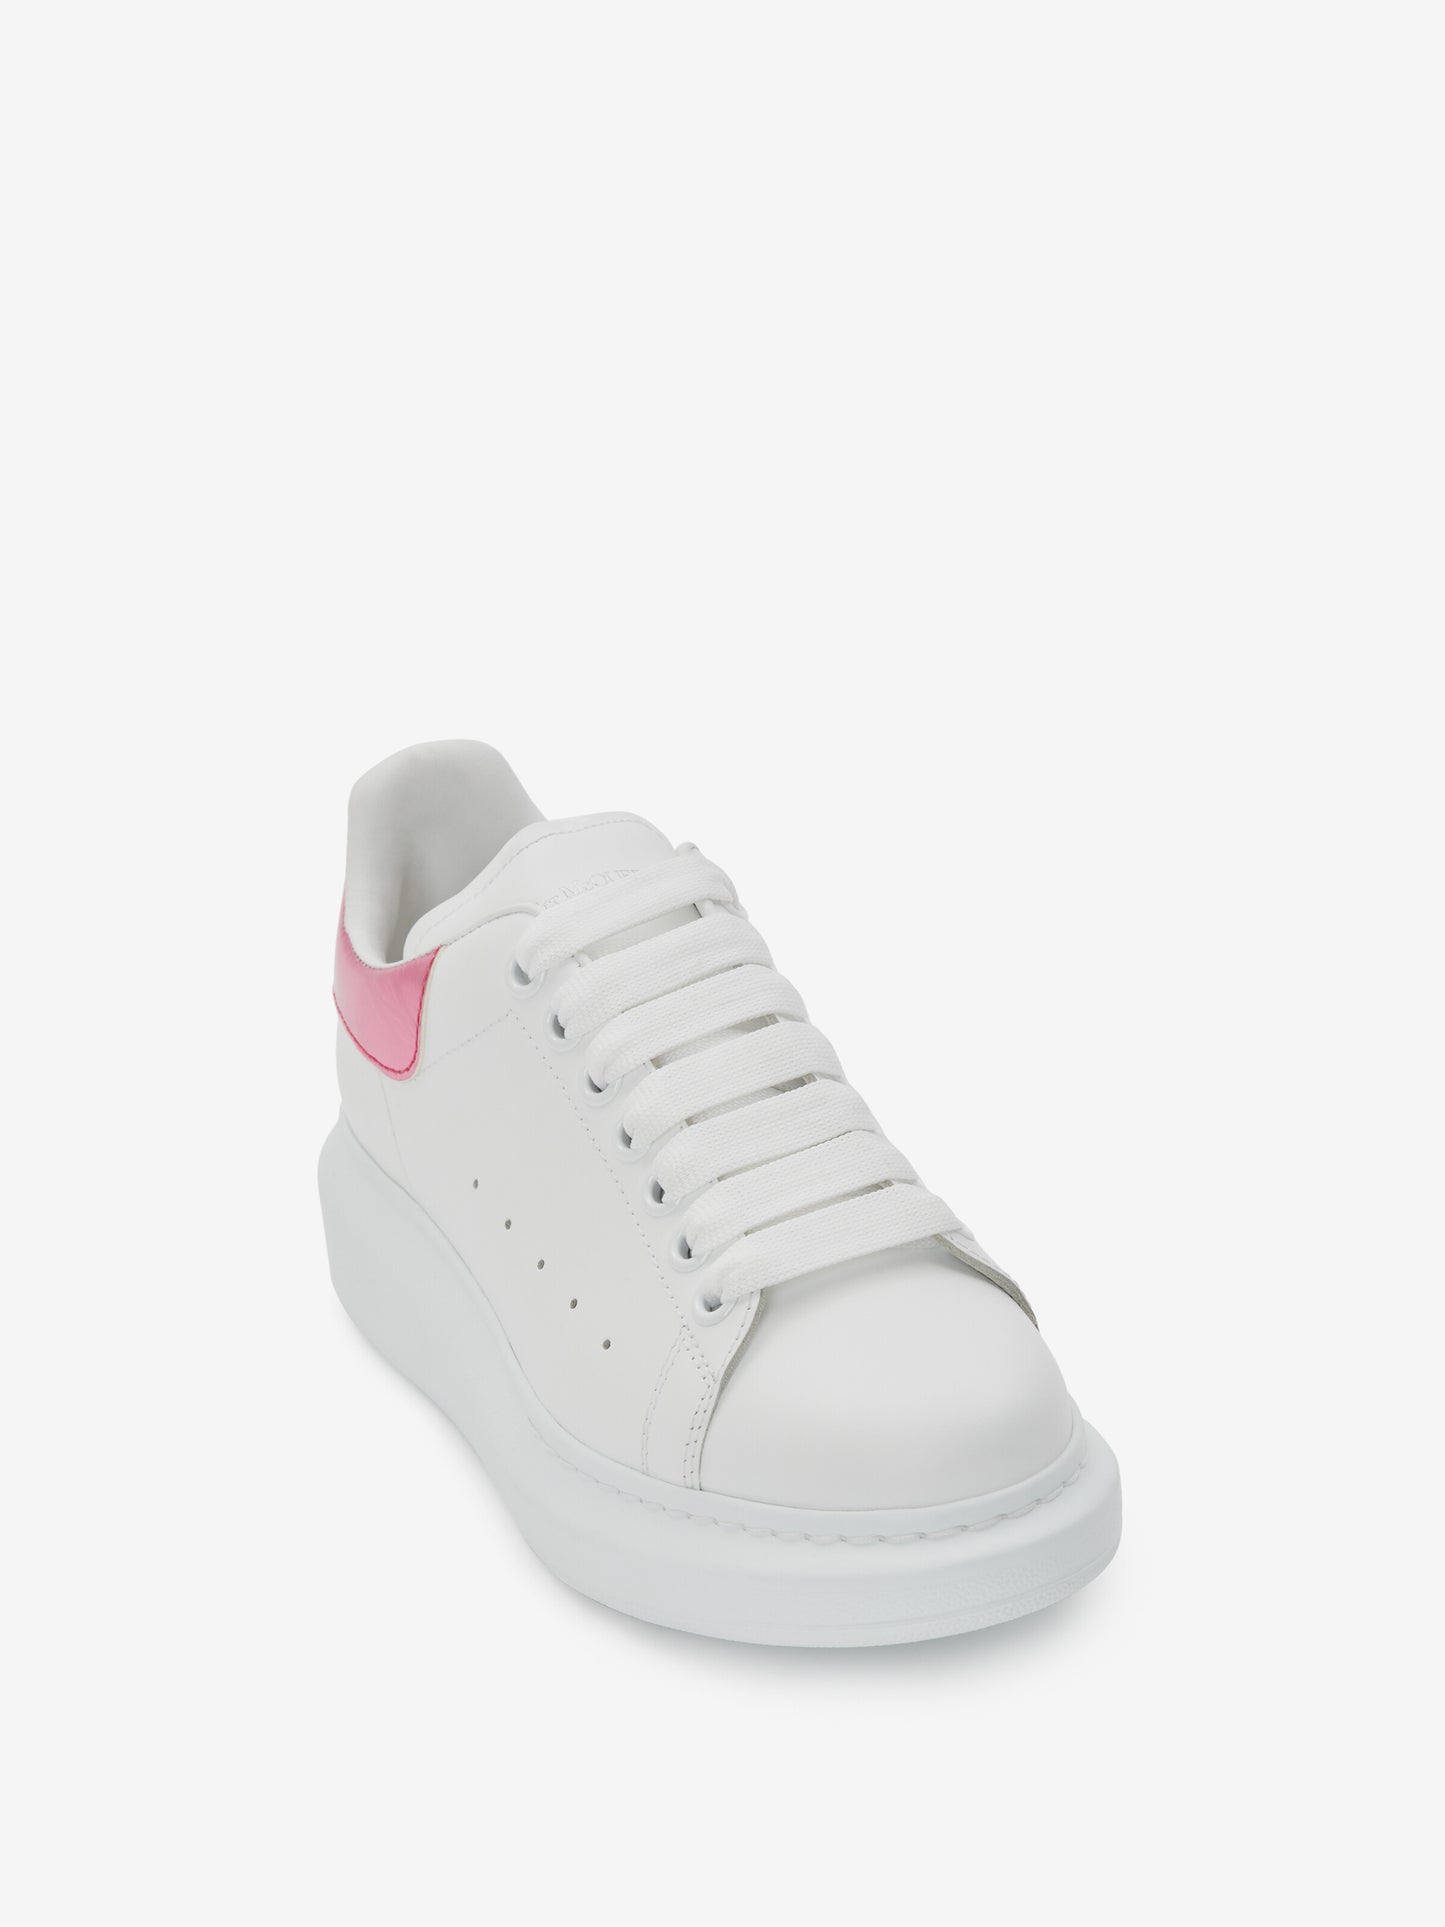 ALEXANDER McQUEEN - Sneaker Oversize in Bianco/rosa lucido - IperShopNY